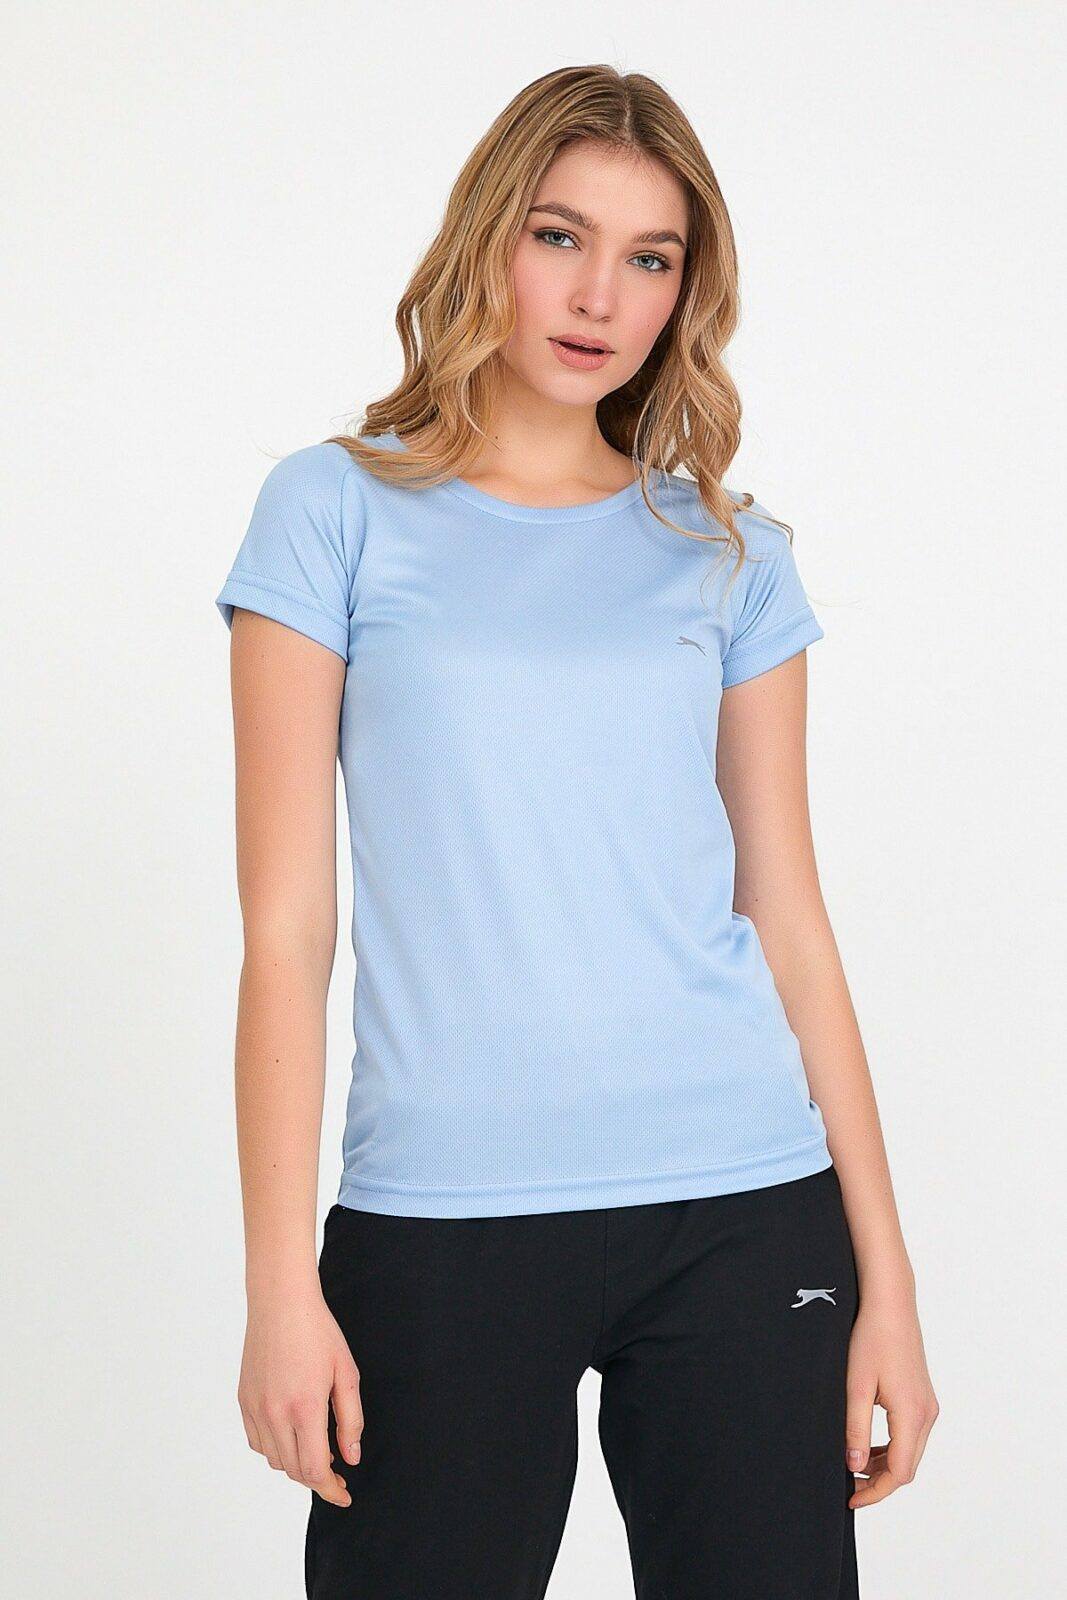 Slazenger T-Shirt - Blue -